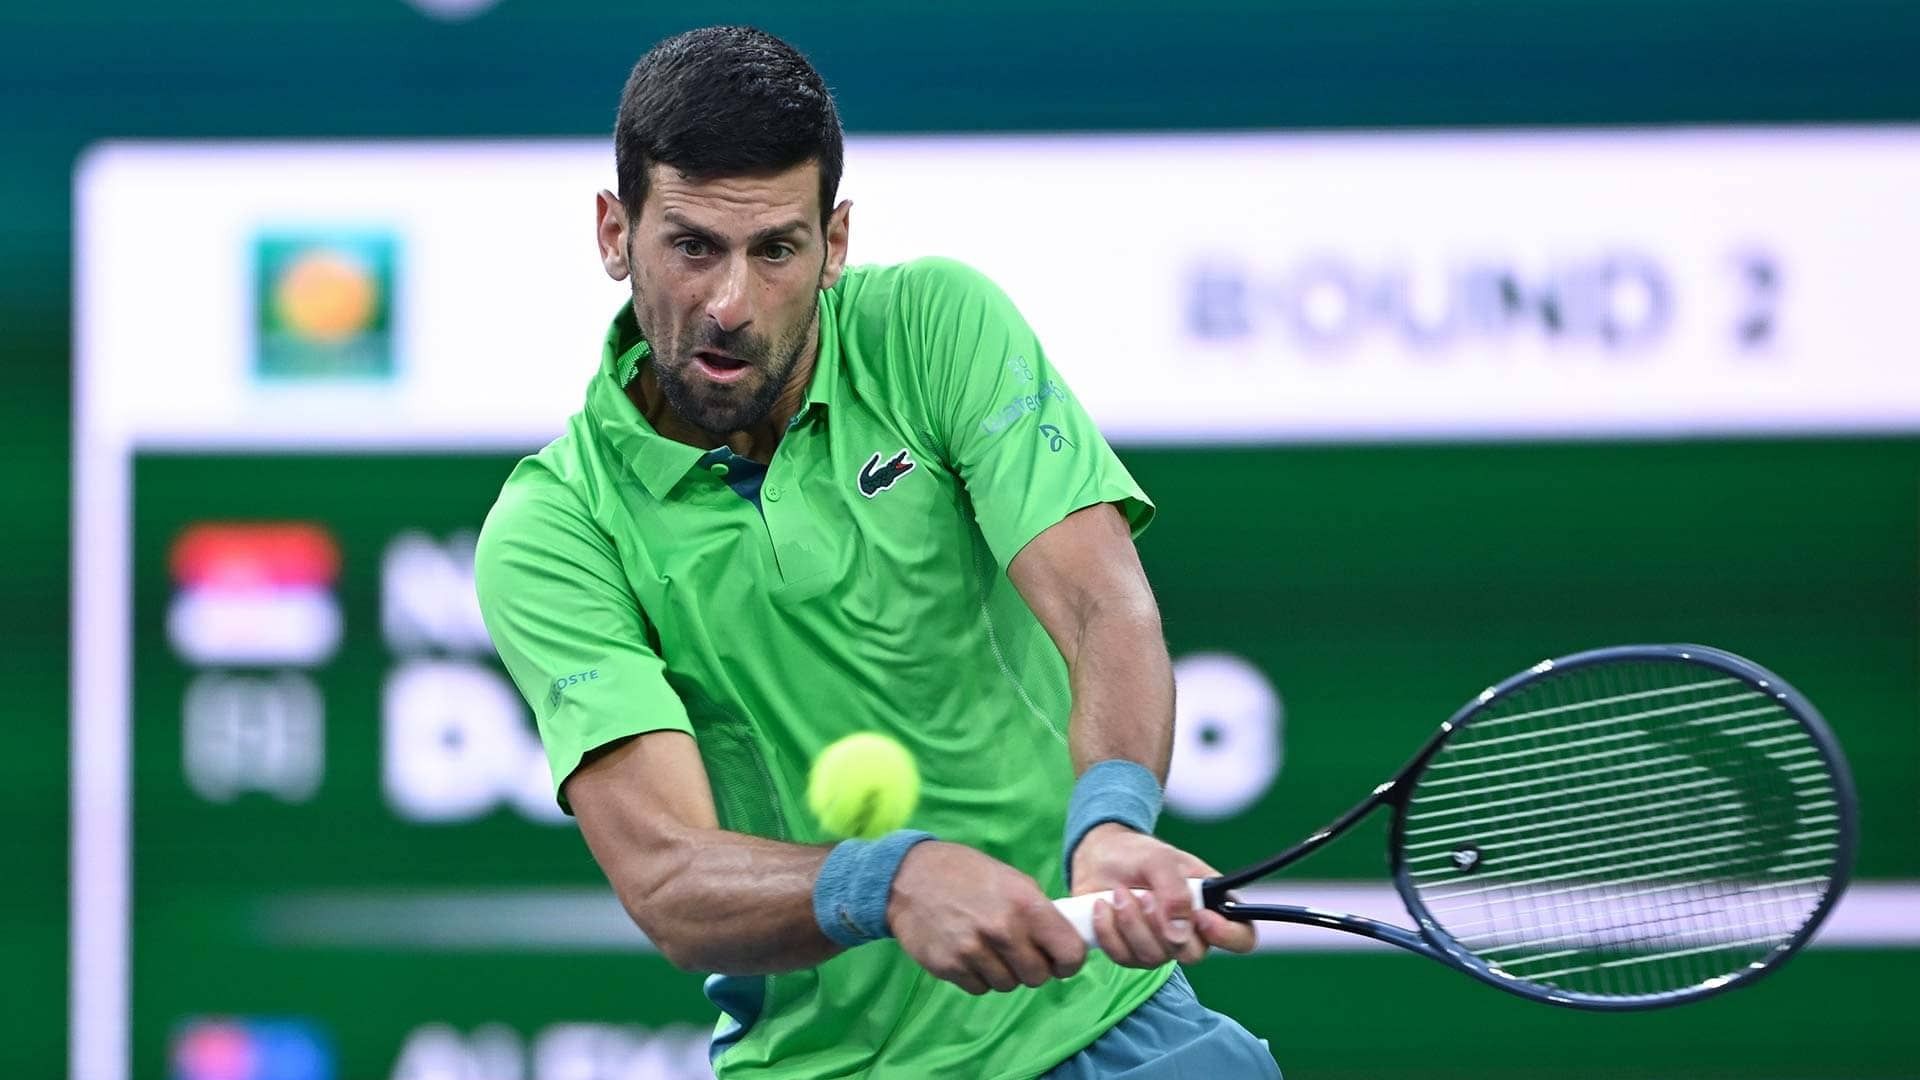 Journalist Ozmo: Novak Djokovic Withdraws From Miami Masters